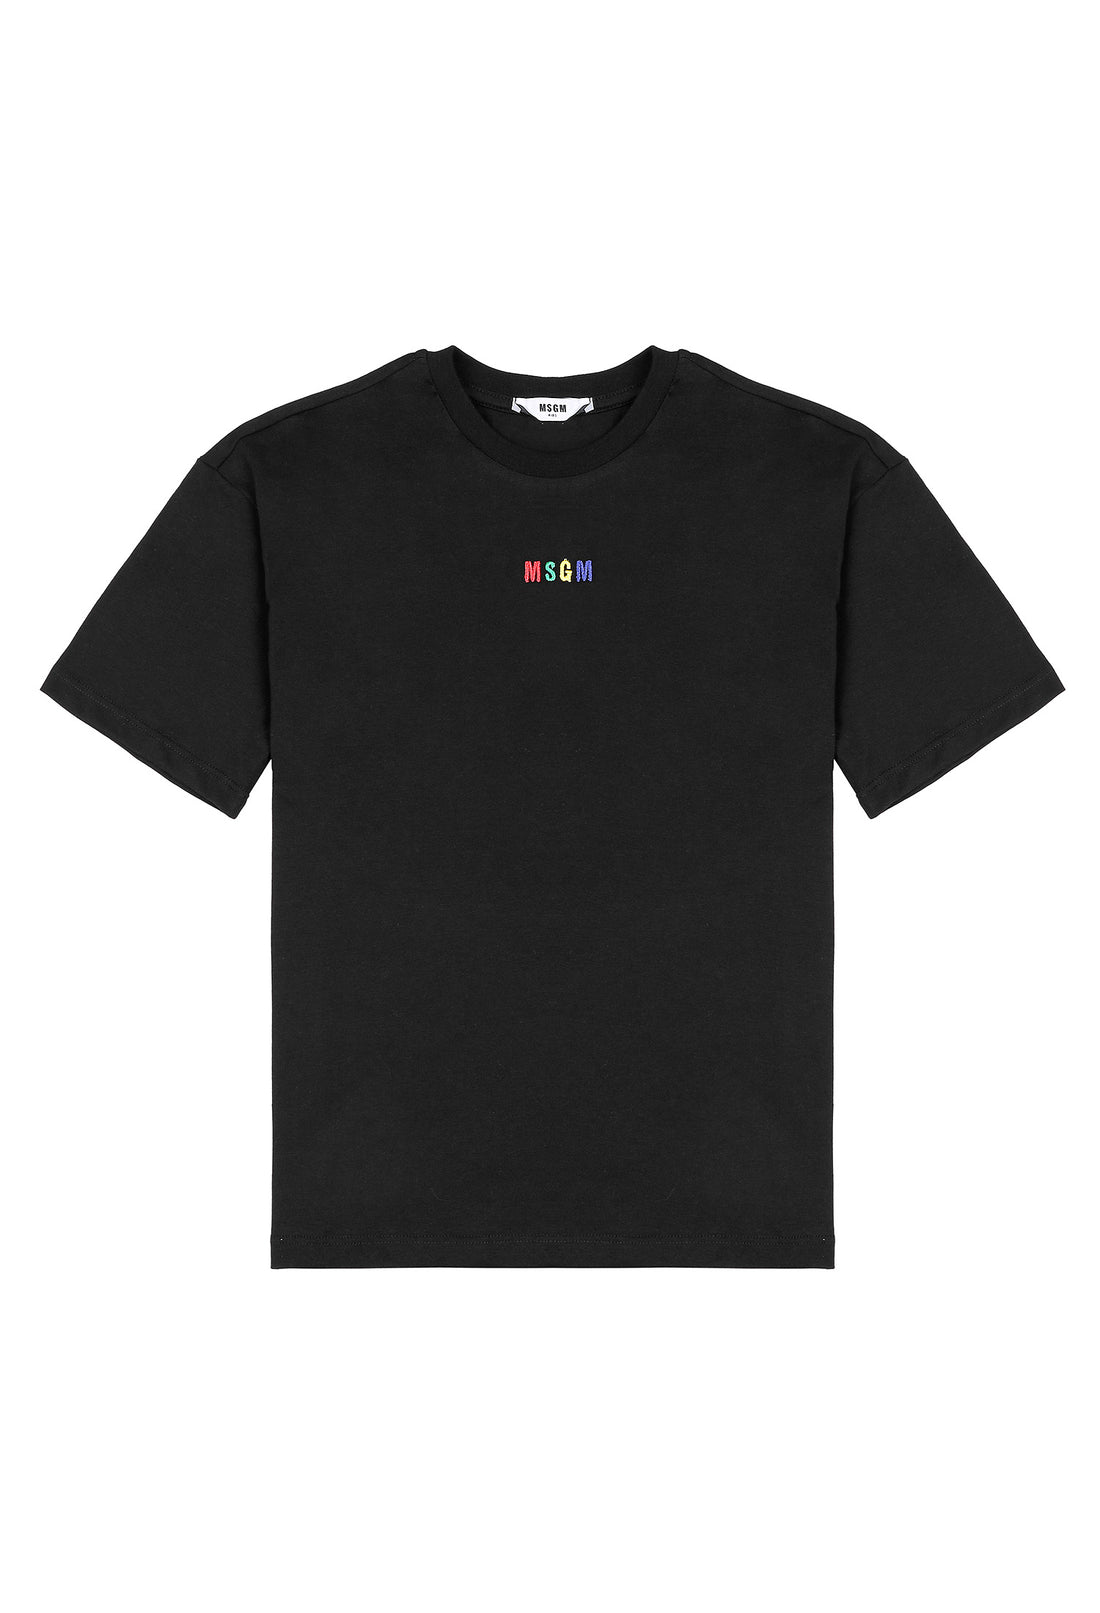 T-shirt materiał czarny łączony MSGM 123 9319 123/92c